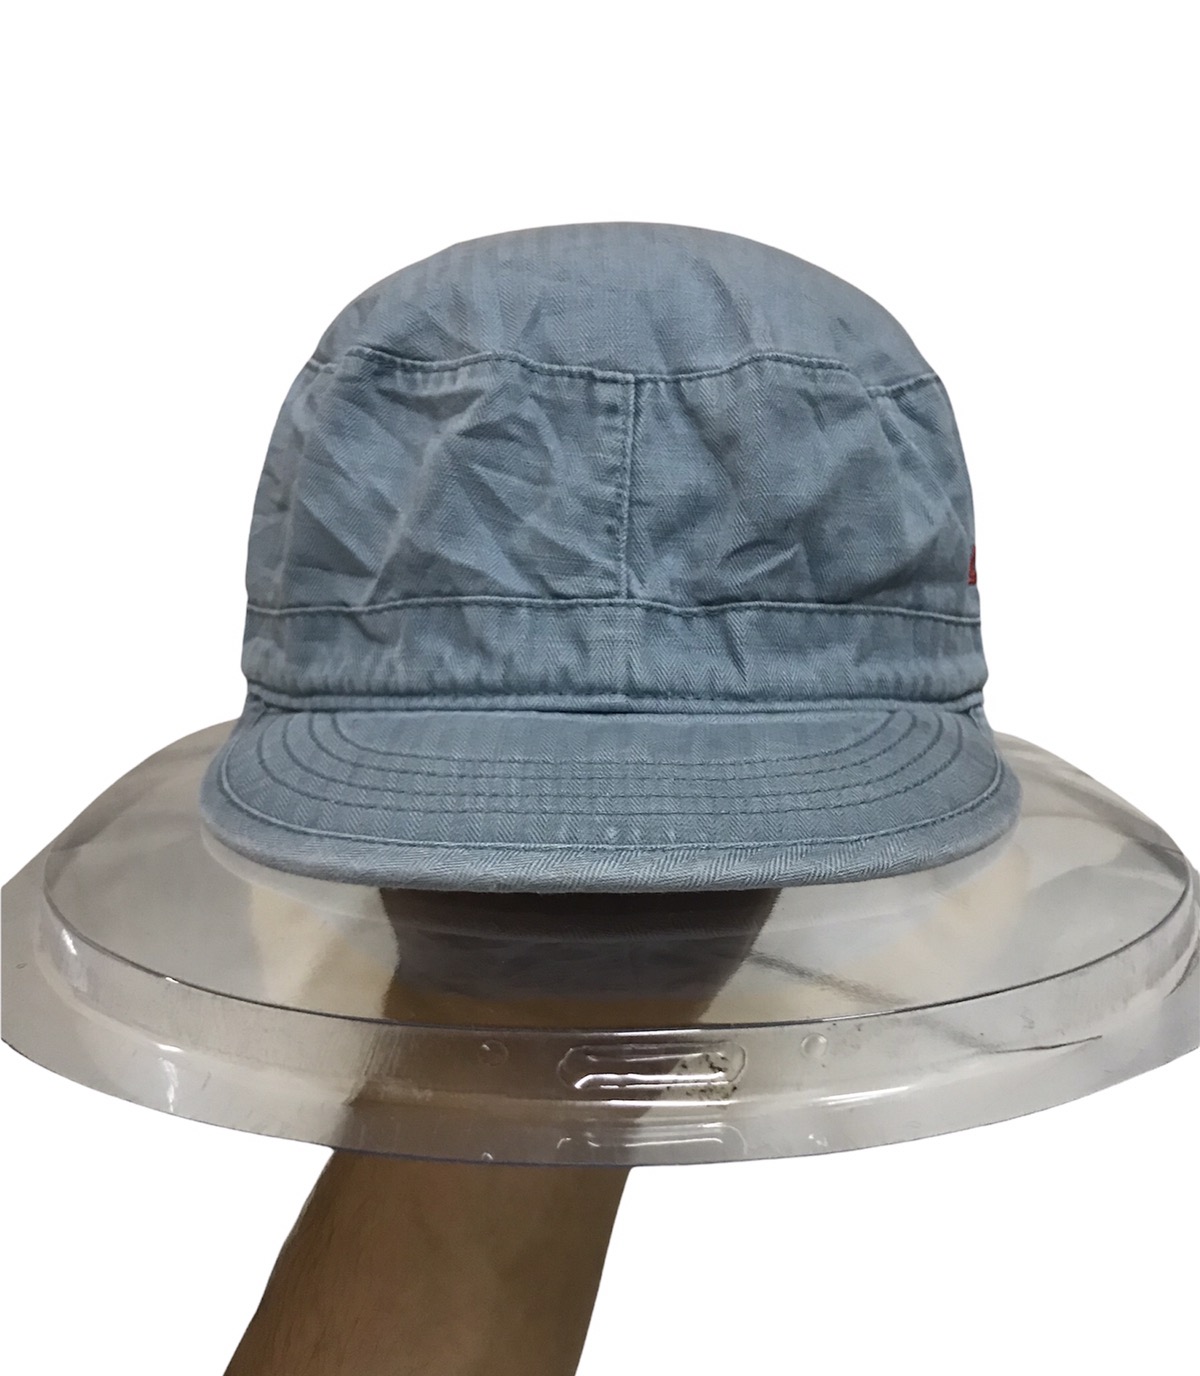 Uniqlo x Undercover Military Hat - 2